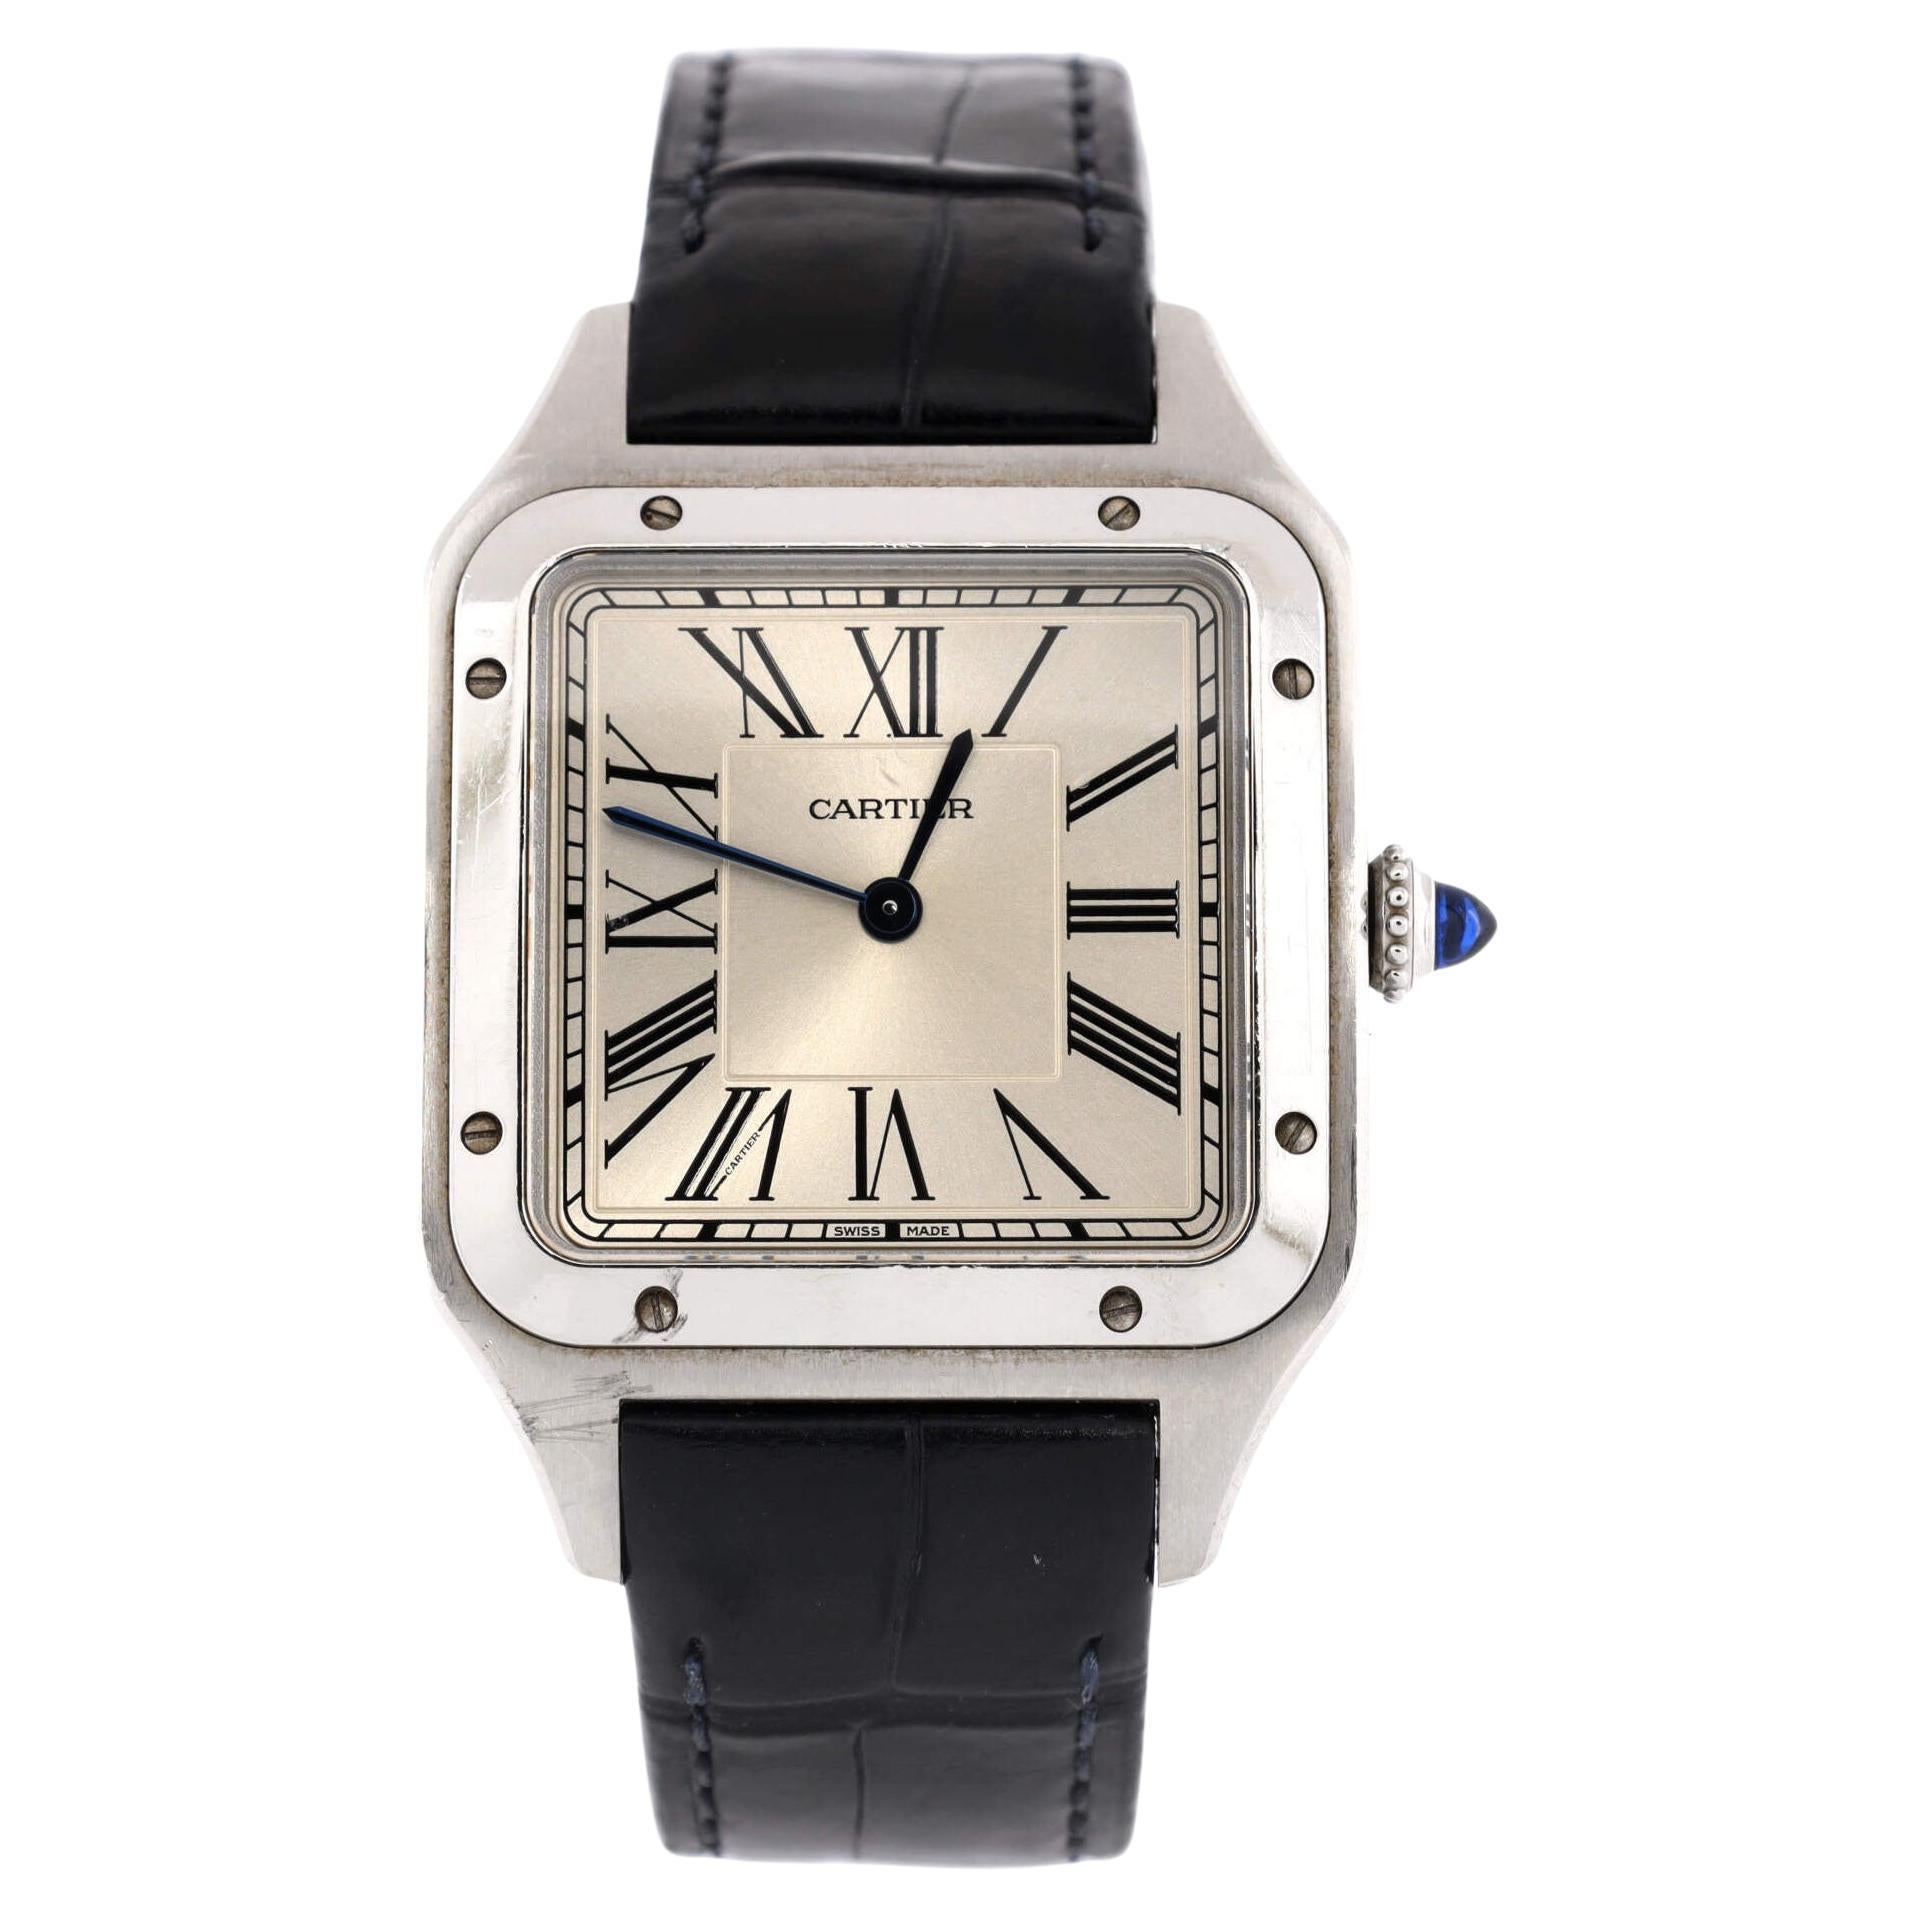 Cartier Santos Dumont Quartz Watch Stainless Steel and Alligator 31